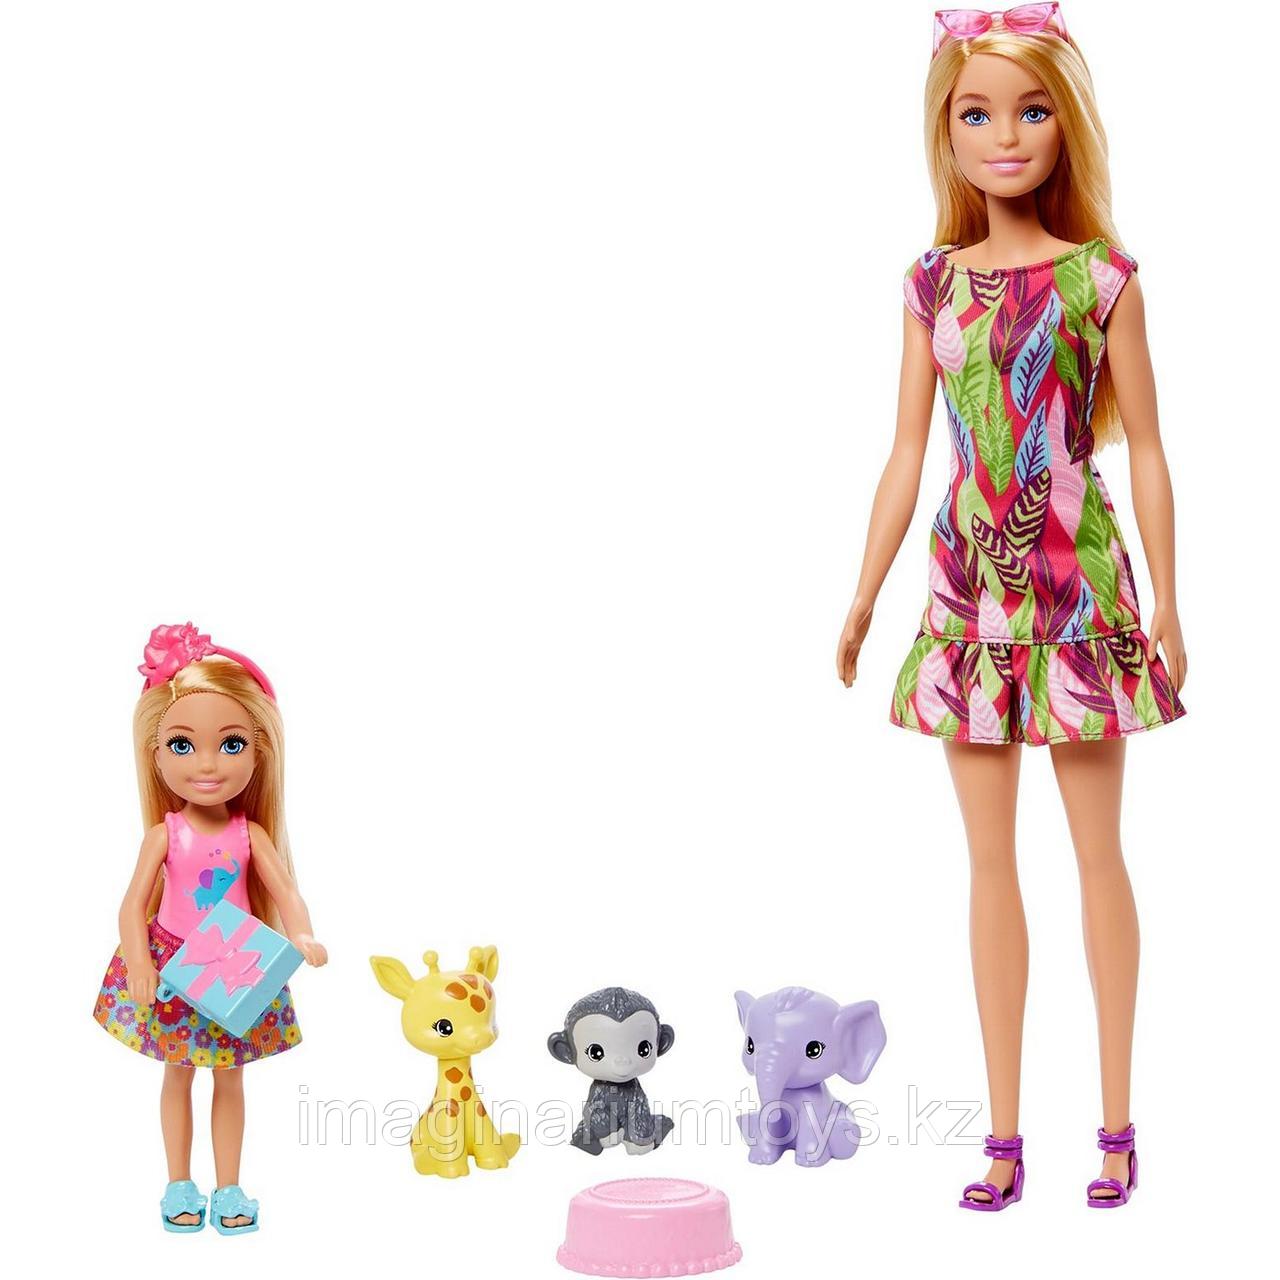 Barbie игровой набор «День рождения Челси», фото 1